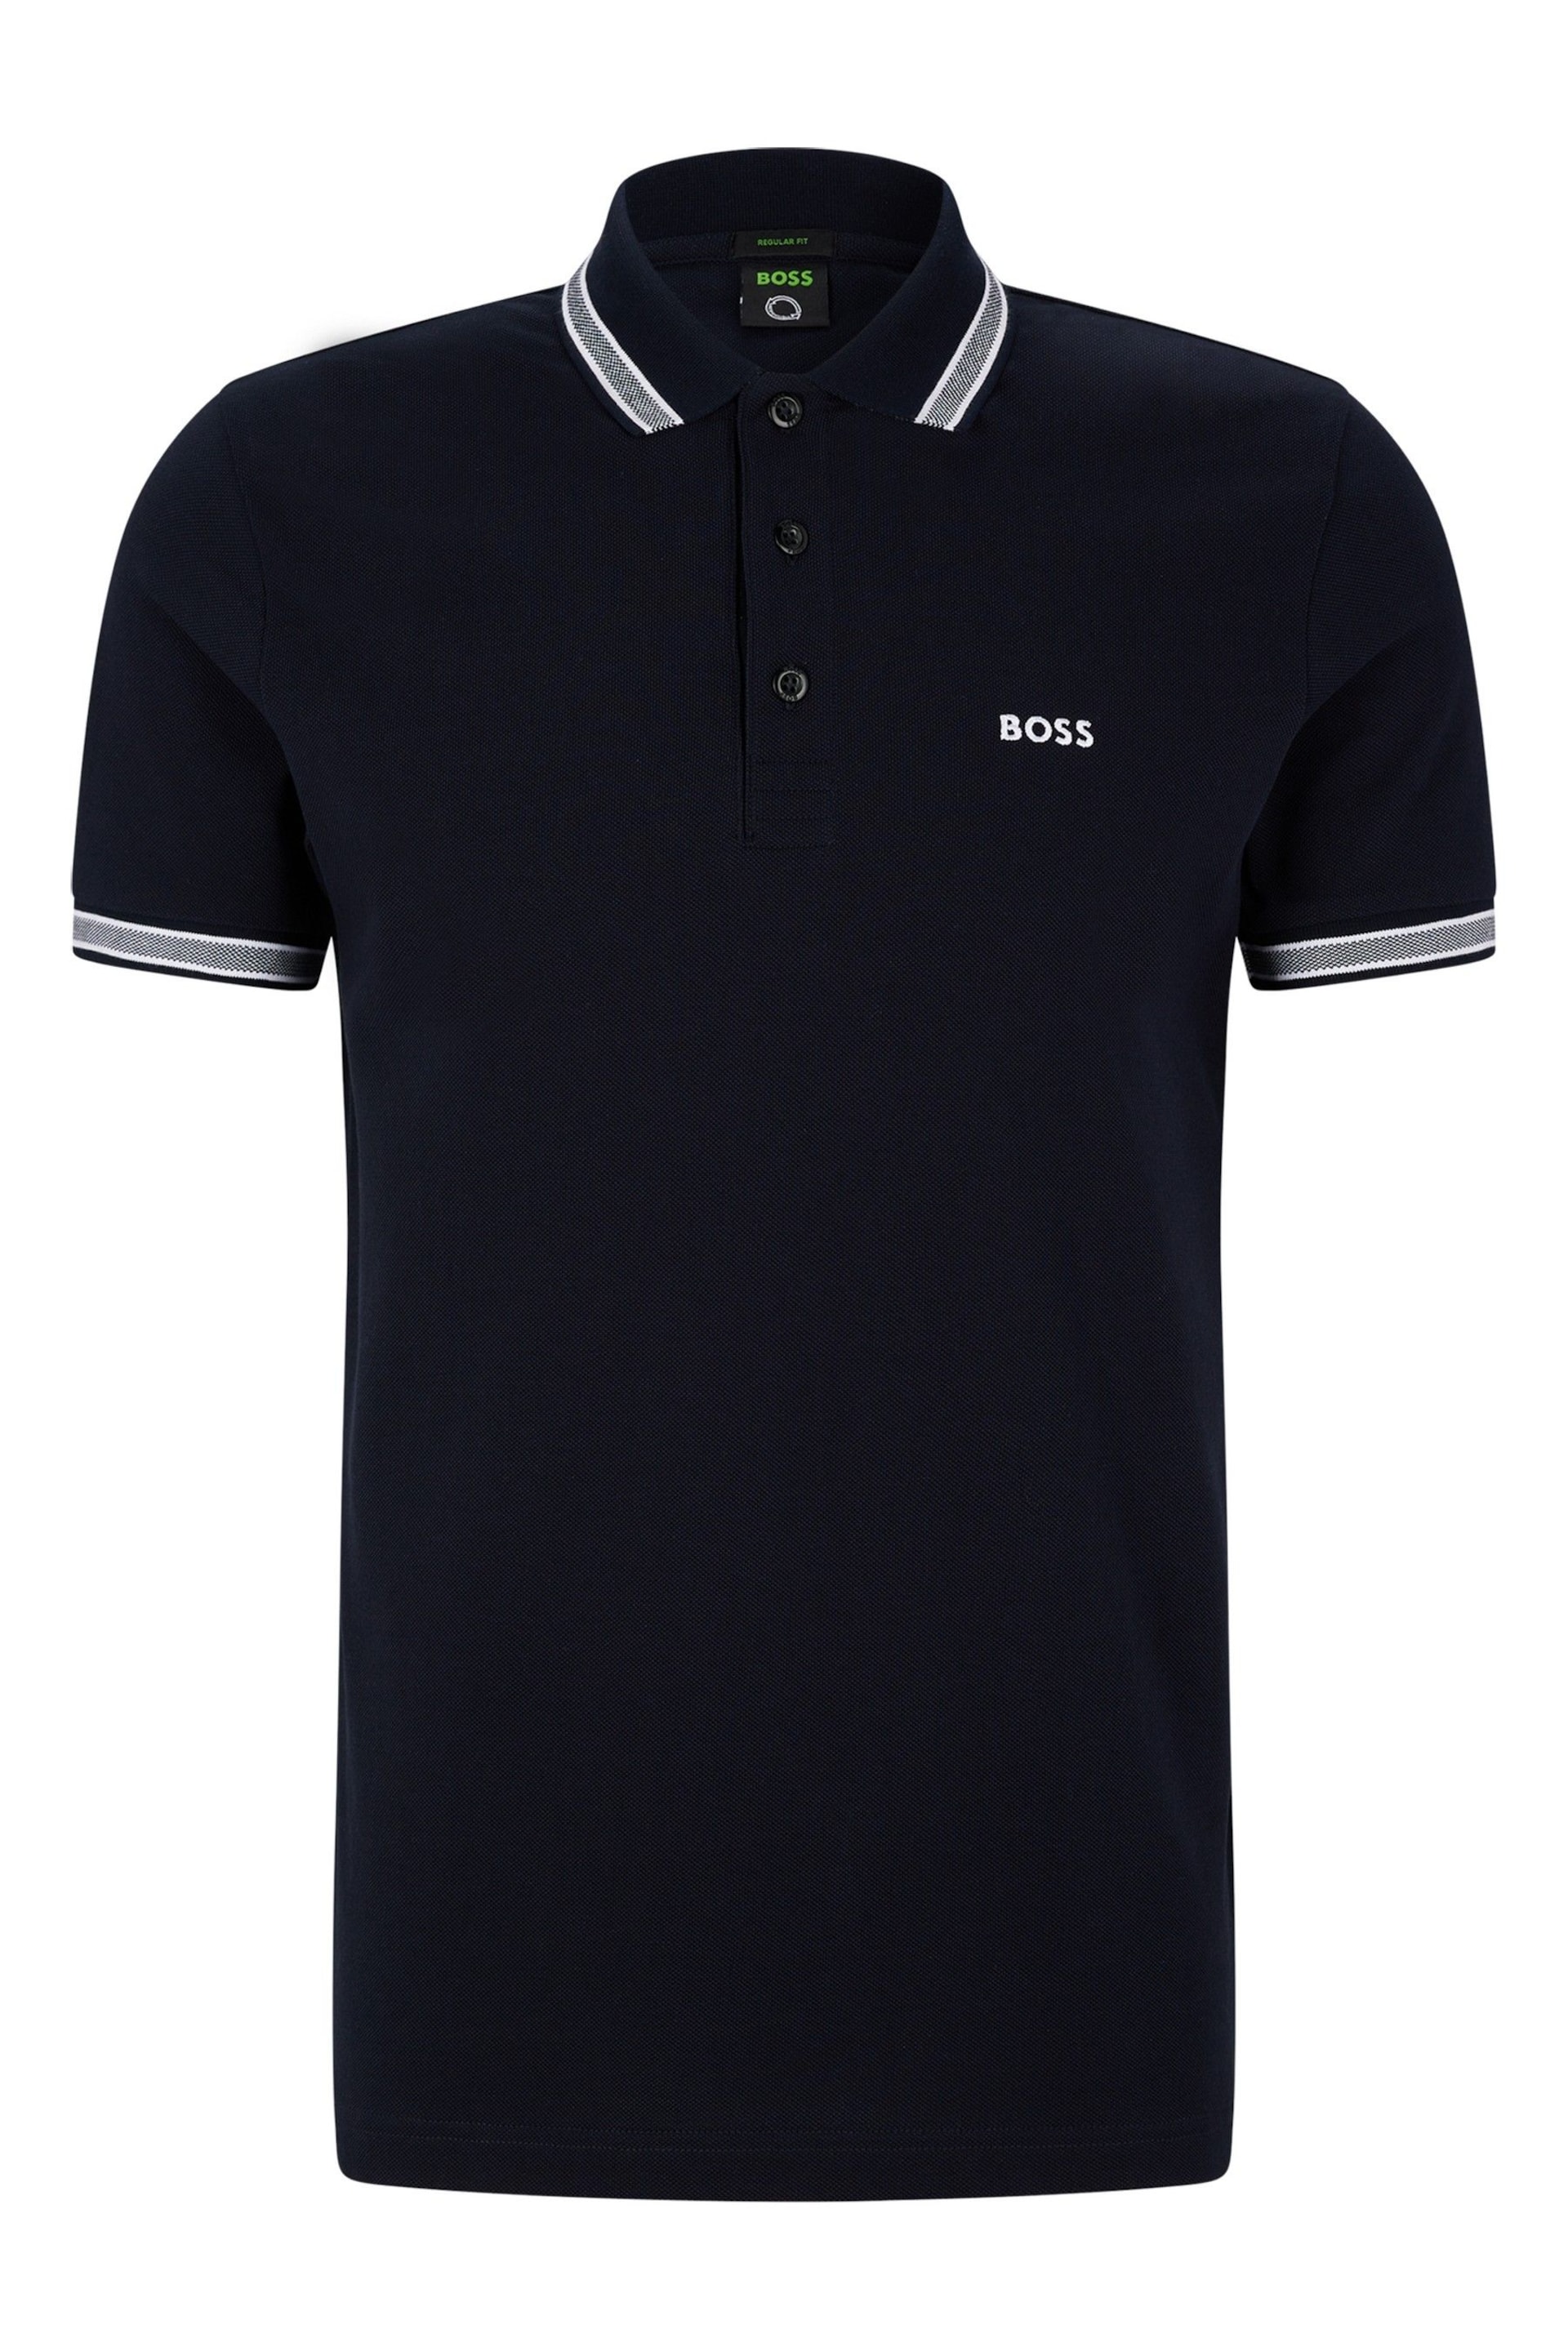 BOSS Blue Paddy Polo Shirt - Image 5 of 5